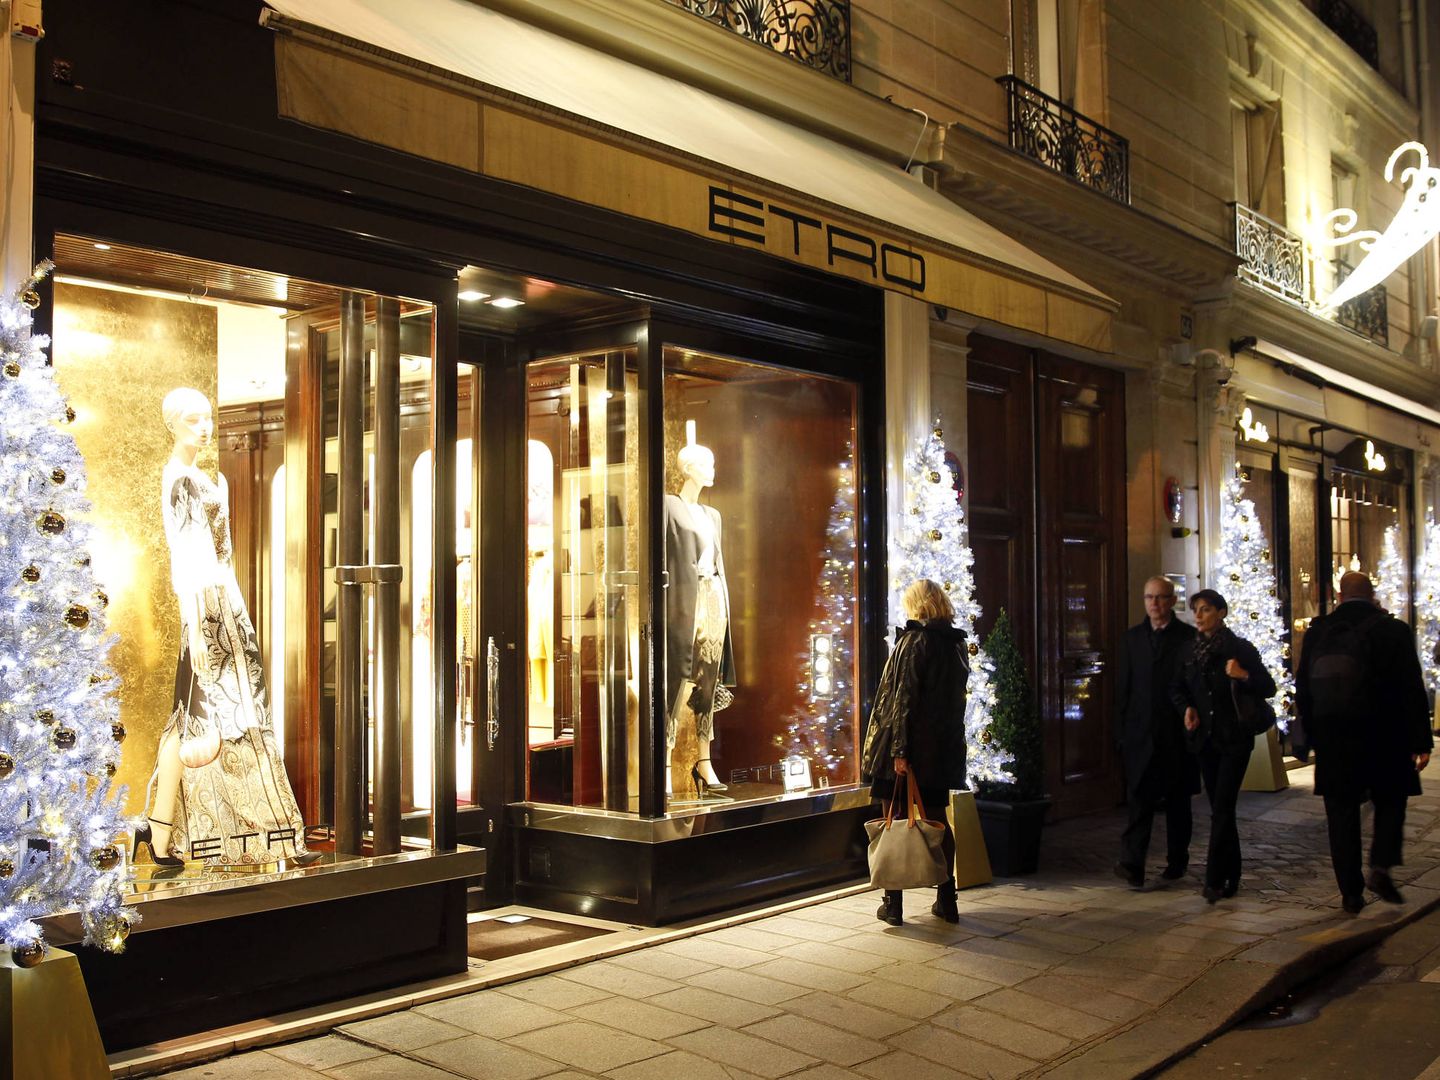 Fachada de la tienda Etro en París iluminada por Navidad (Thierry Chesnot/Getty Images)